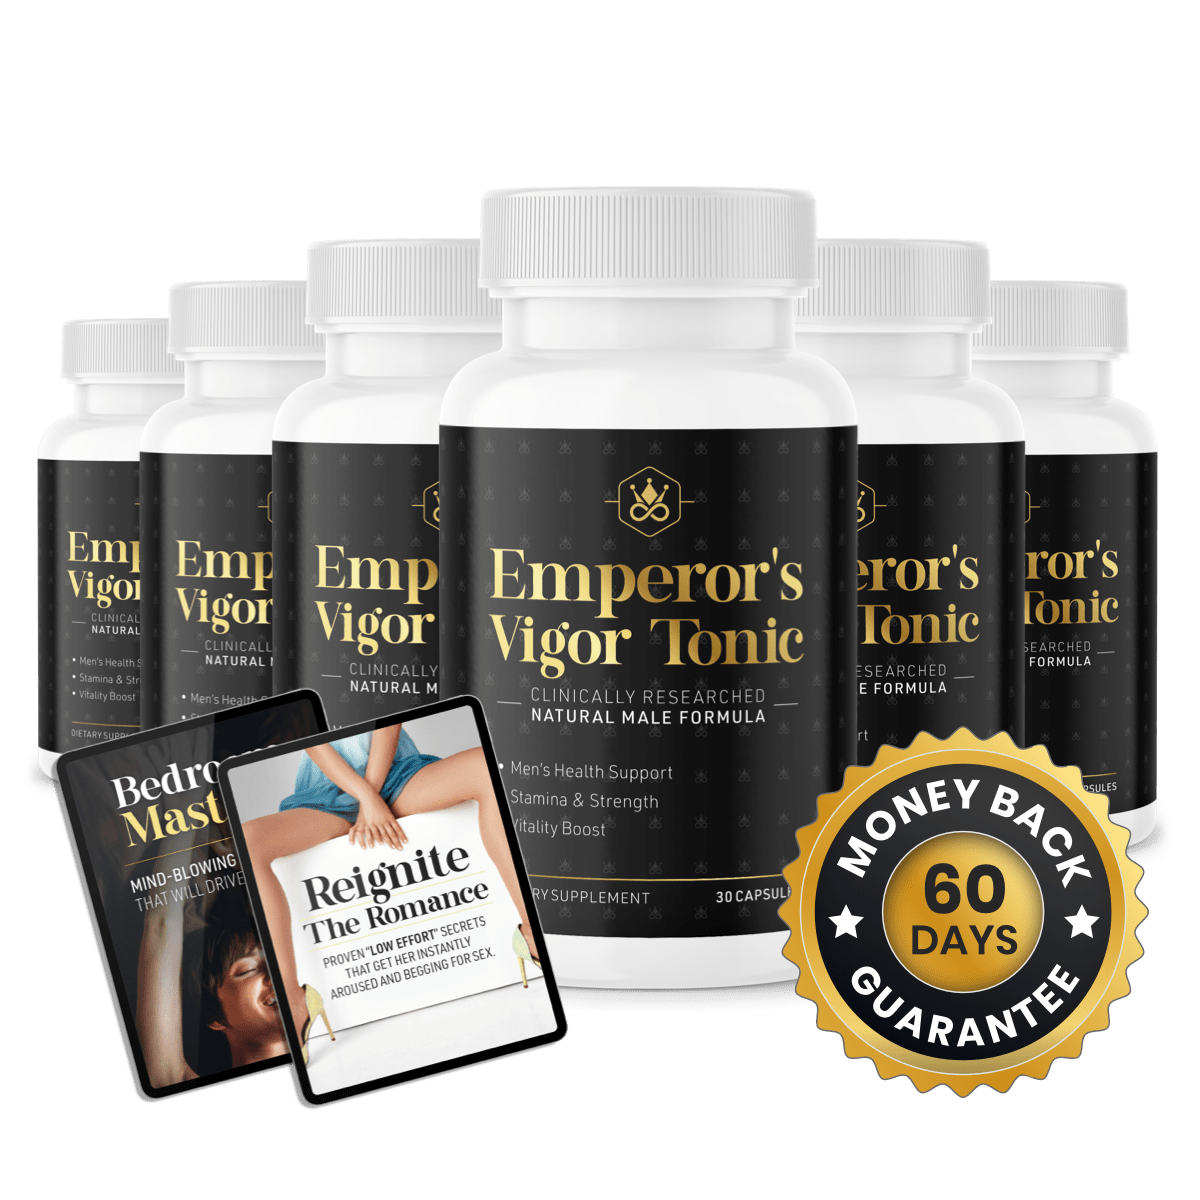 Emperor’s Vigor Tonic Supplement